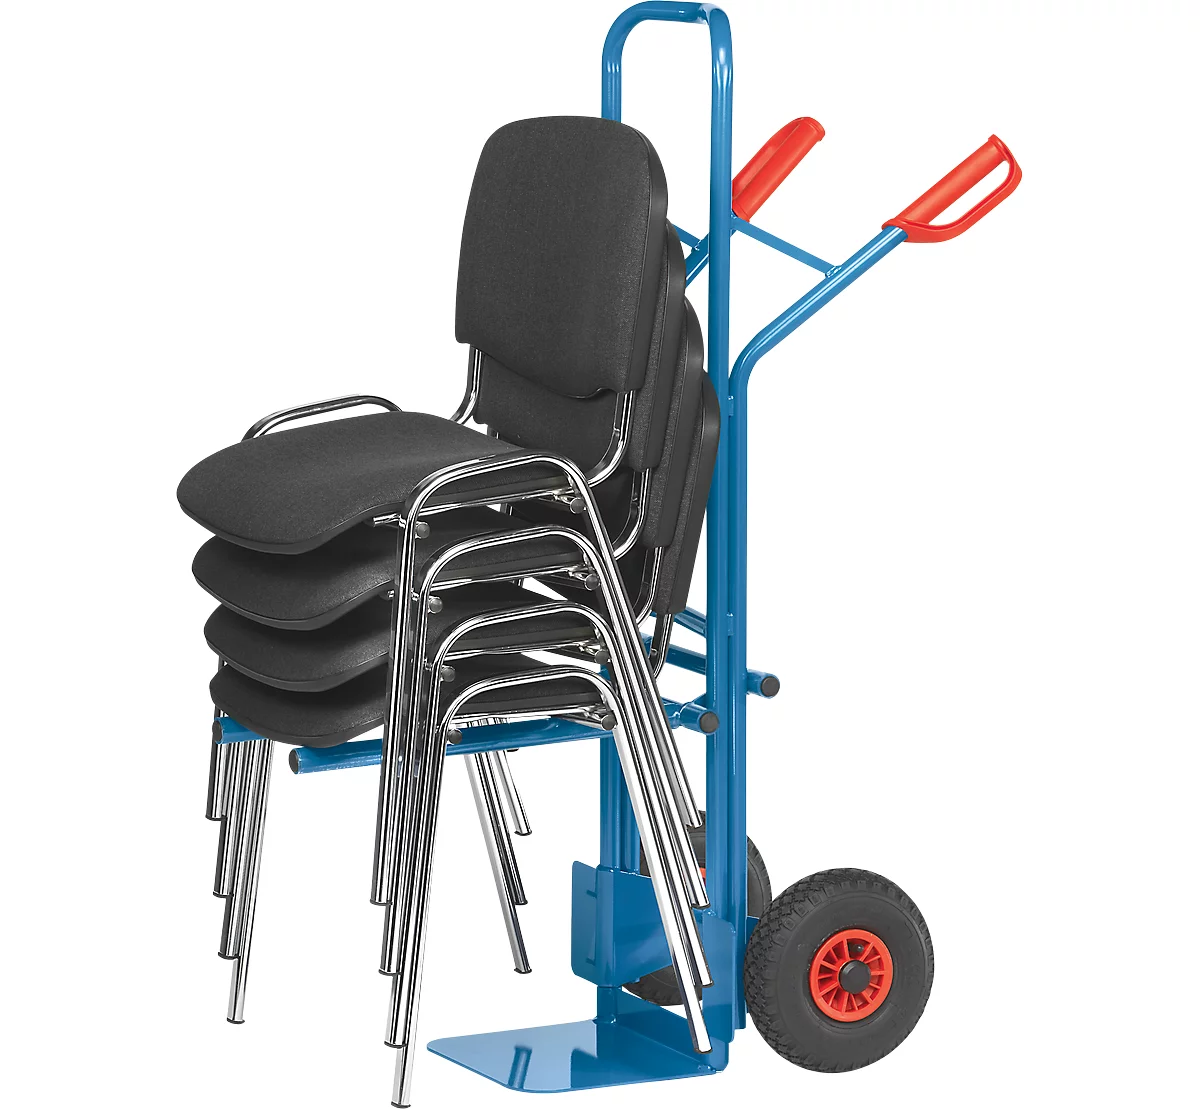 Carretilla para sillas/apiladora, carga máx. 300 kg, neumáticos de goma maciza